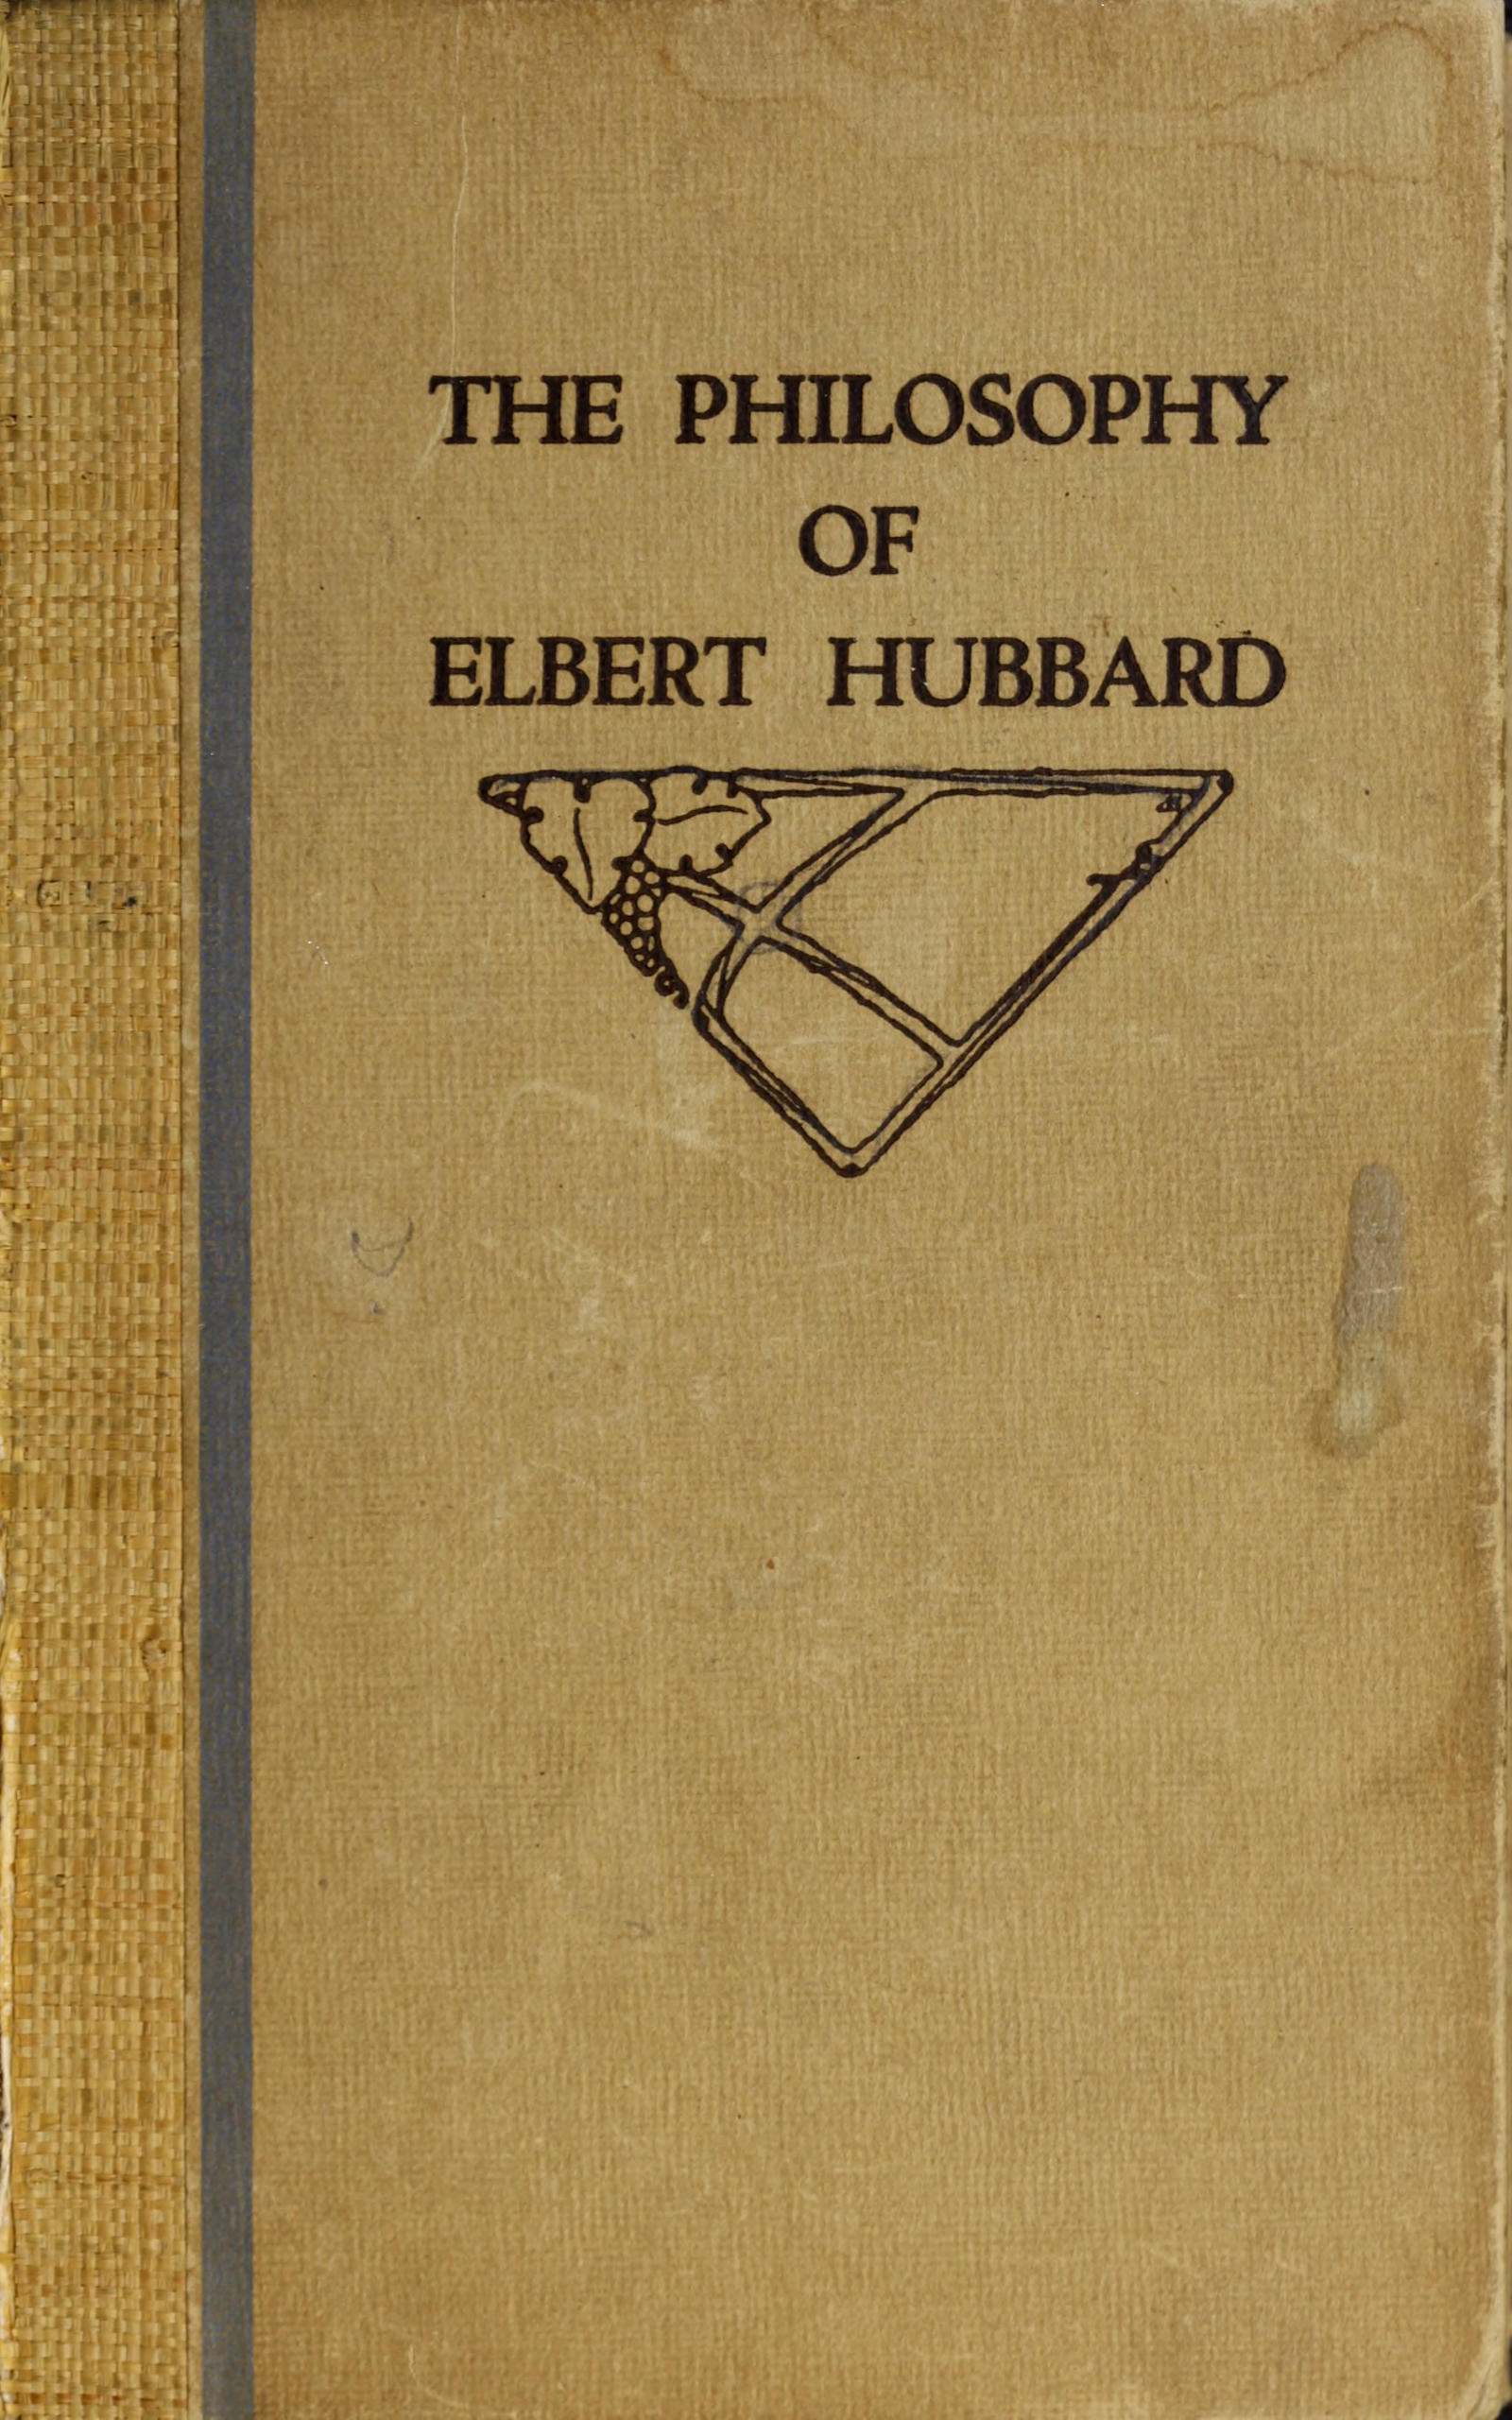 The philosophy of Elbert Hubbard